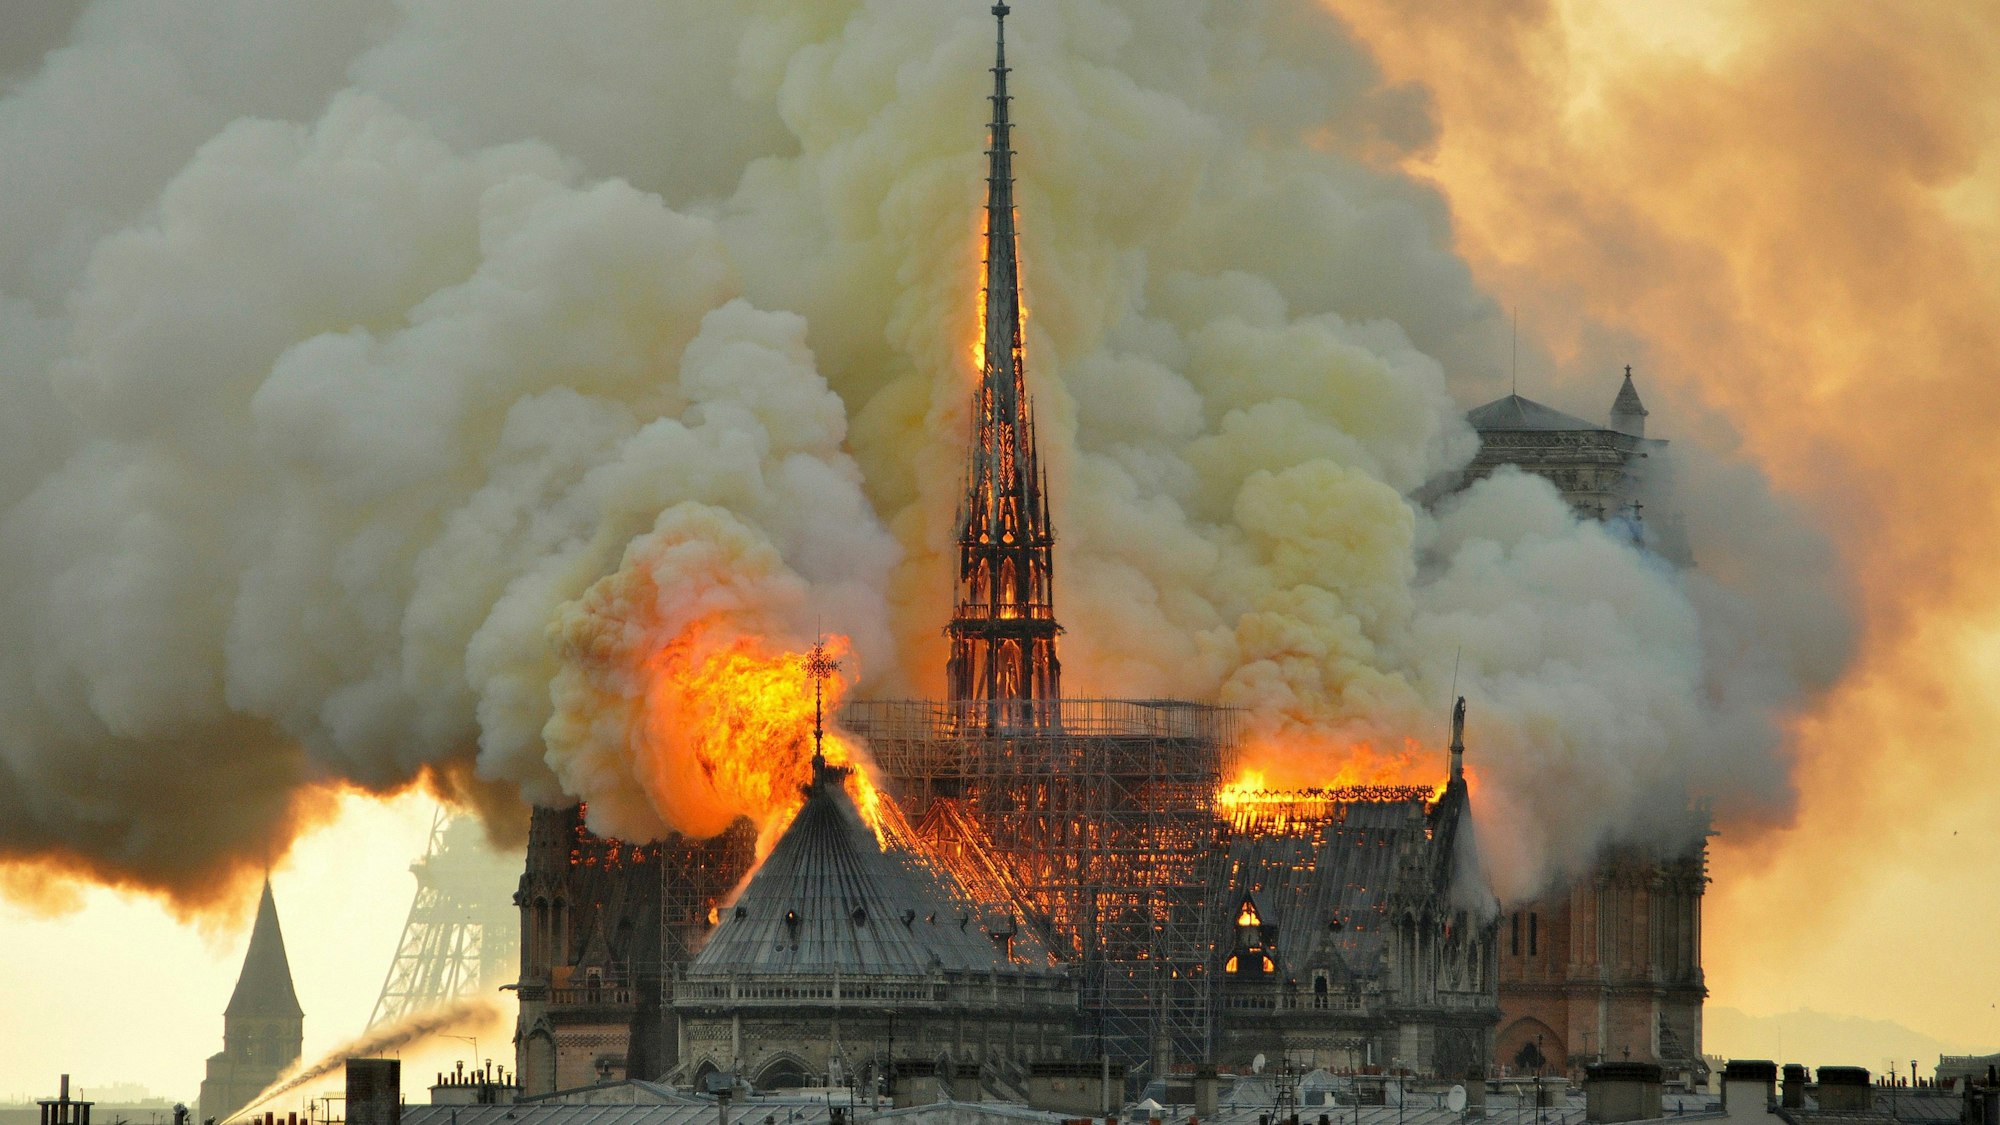 Kathedrale, die in Flammen steht und von großen Rauchwolken umgeben ist